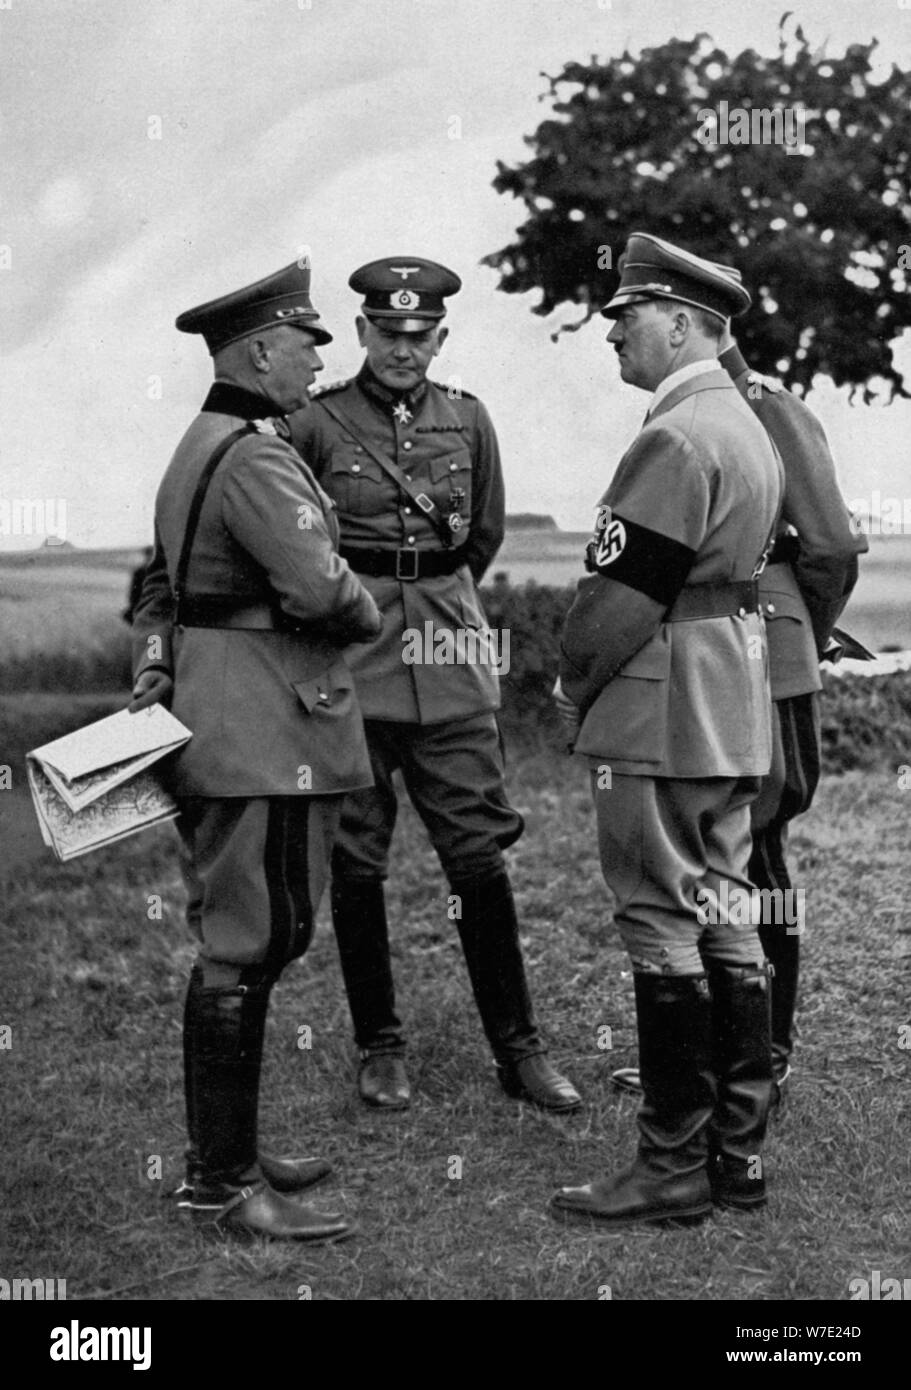 Adolf Hitler avec des hauts officiers de l'armée allemande, zone d'entraînement de Munster, Allemagne, 1935. Artiste : Inconnu Banque D'Images